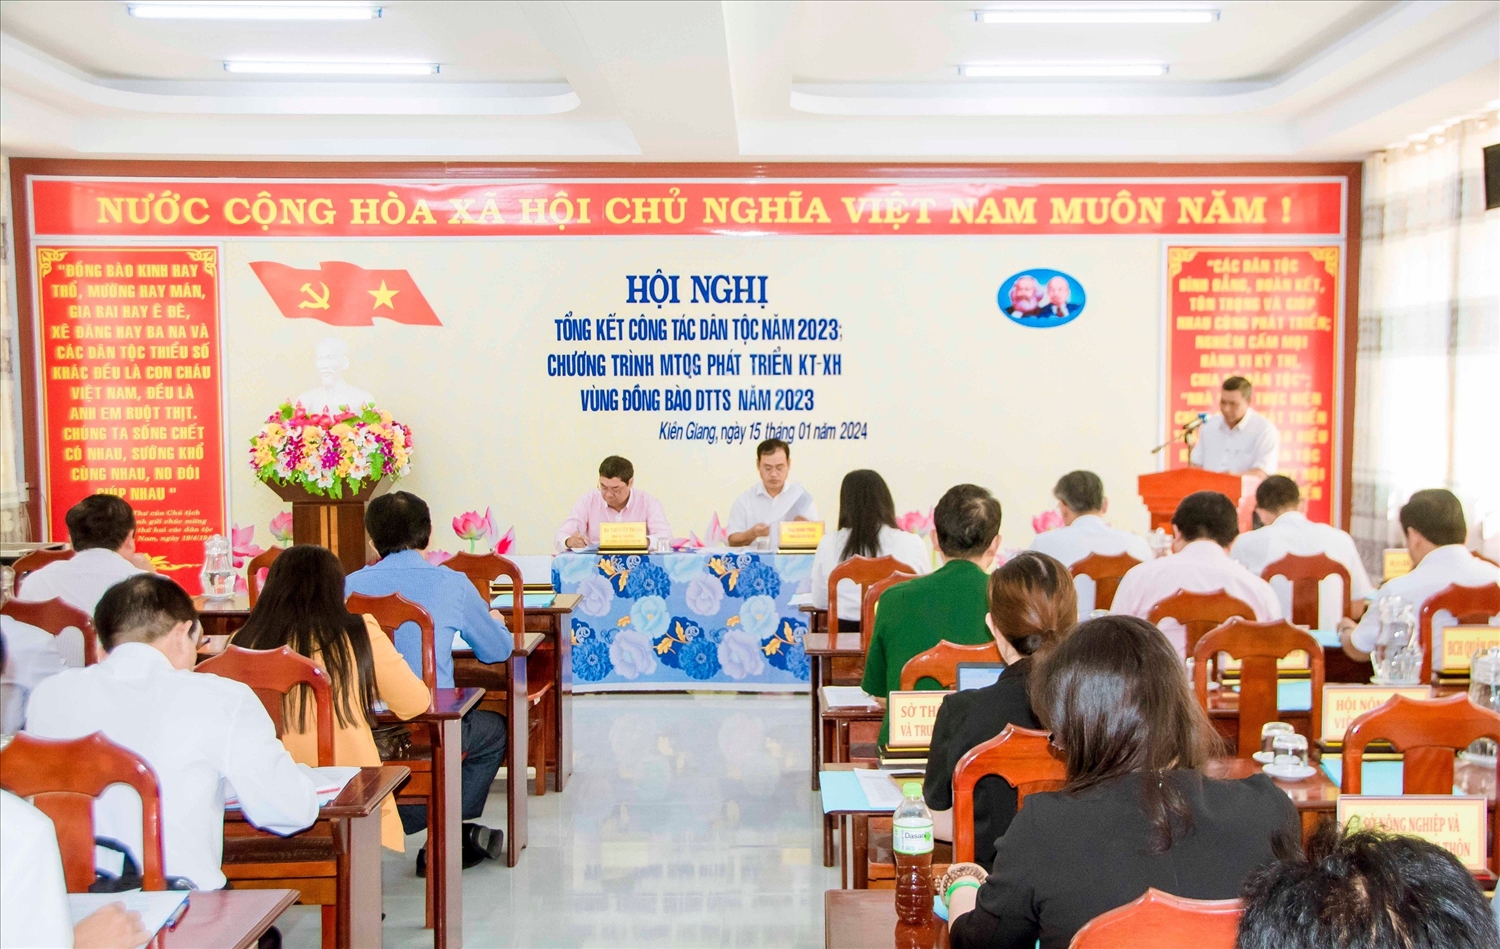 Các đại biểu tham dự Hội nghị tổng kết công tác dân tộc tỉnh Kiên Giang năm 2023 